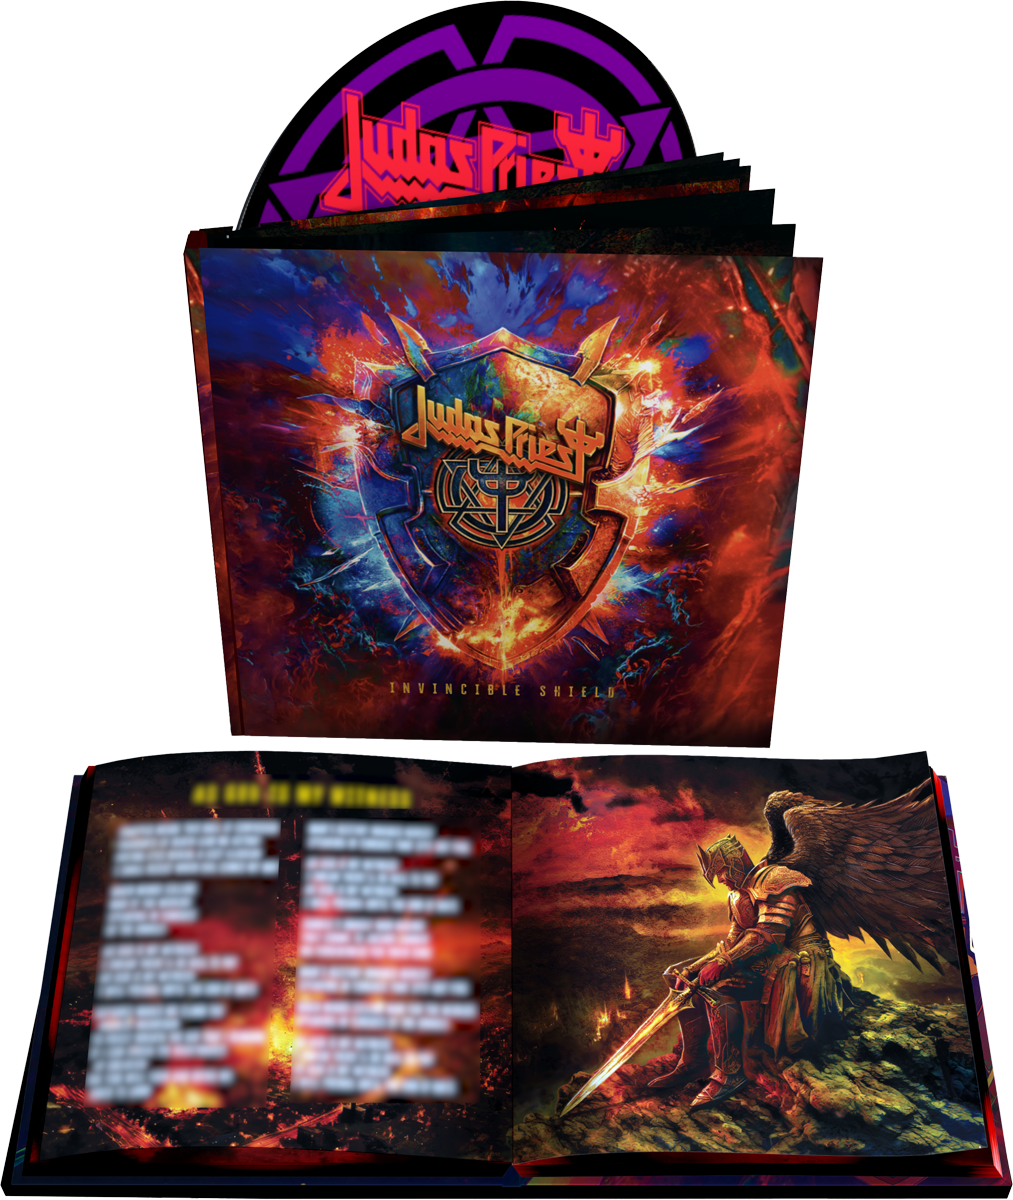 Judas Priest - Invincible shield - CD - multicolor